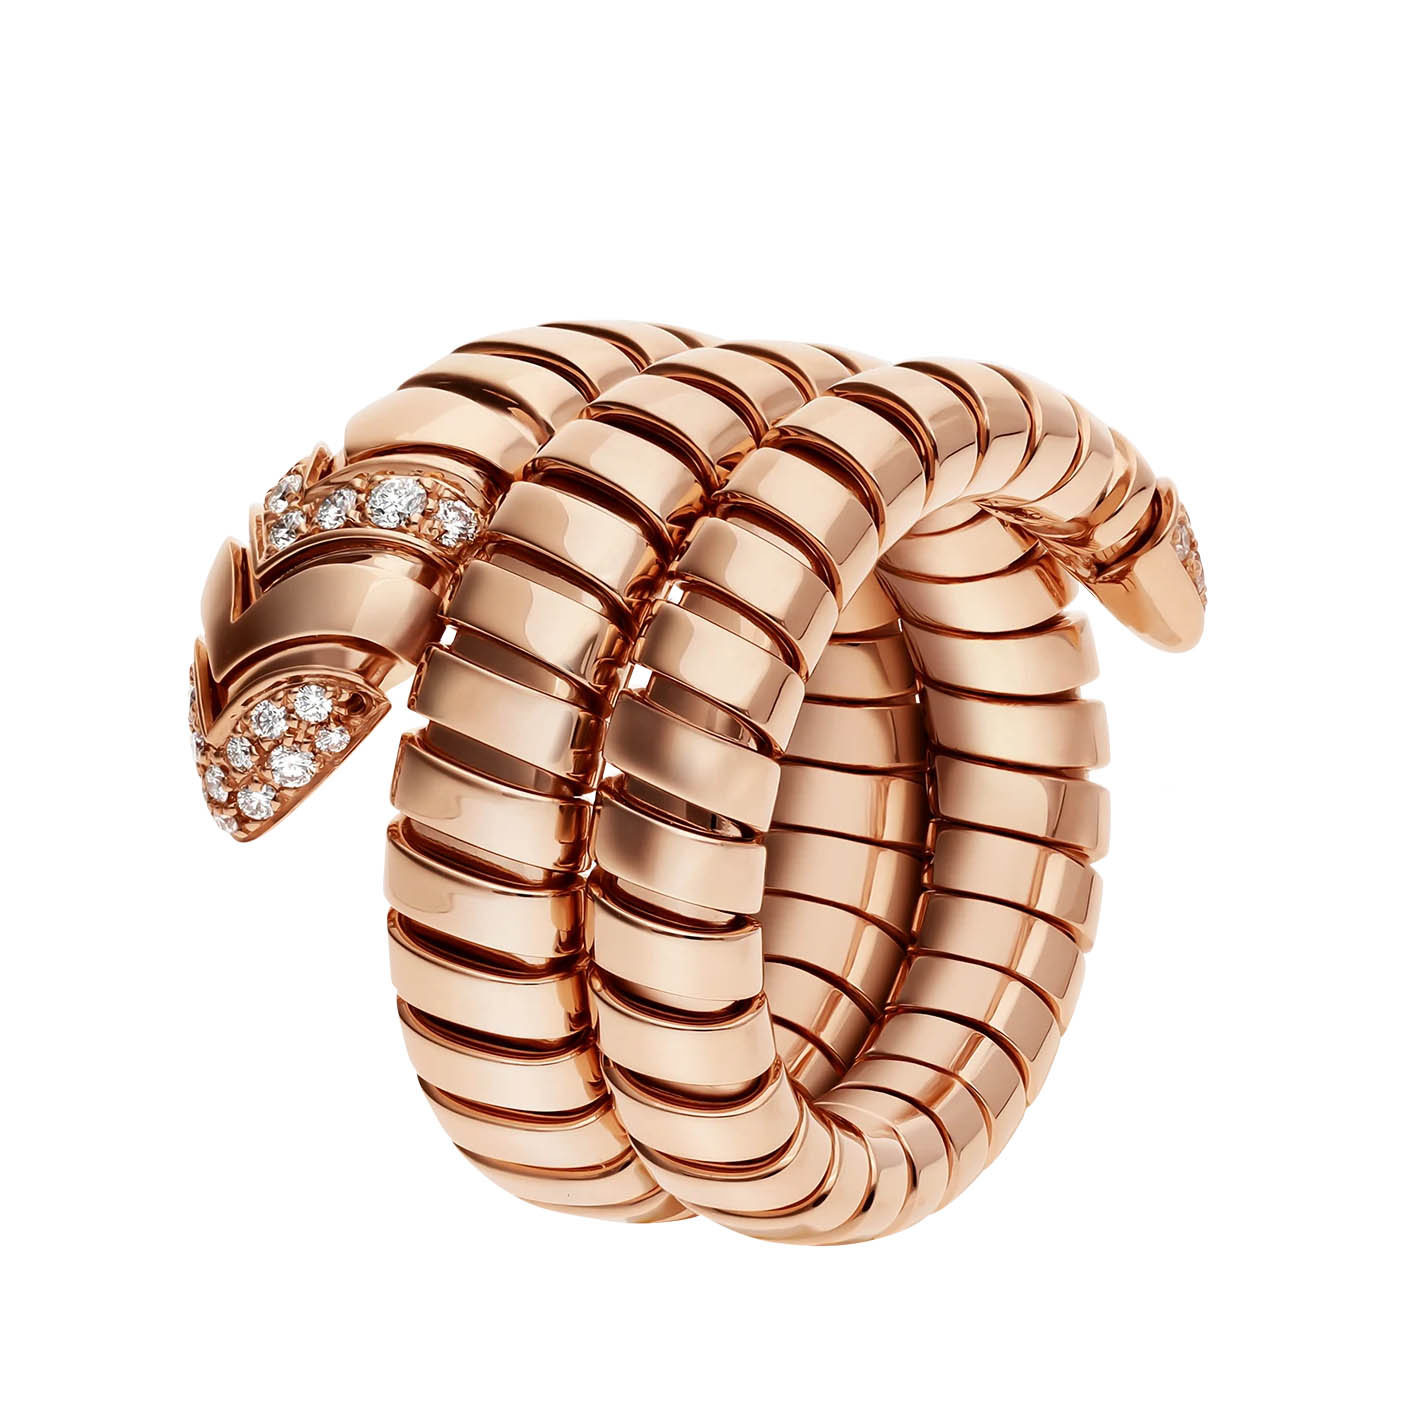 Großhandel, individuell gestalteter Doppelspiralring OEM/ODM-Schmuck aus 18-karätigem Roségold, besetzt mit Pavé-Diamanten am Schwanz und am Kopf. OEM-Schmuckhersteller